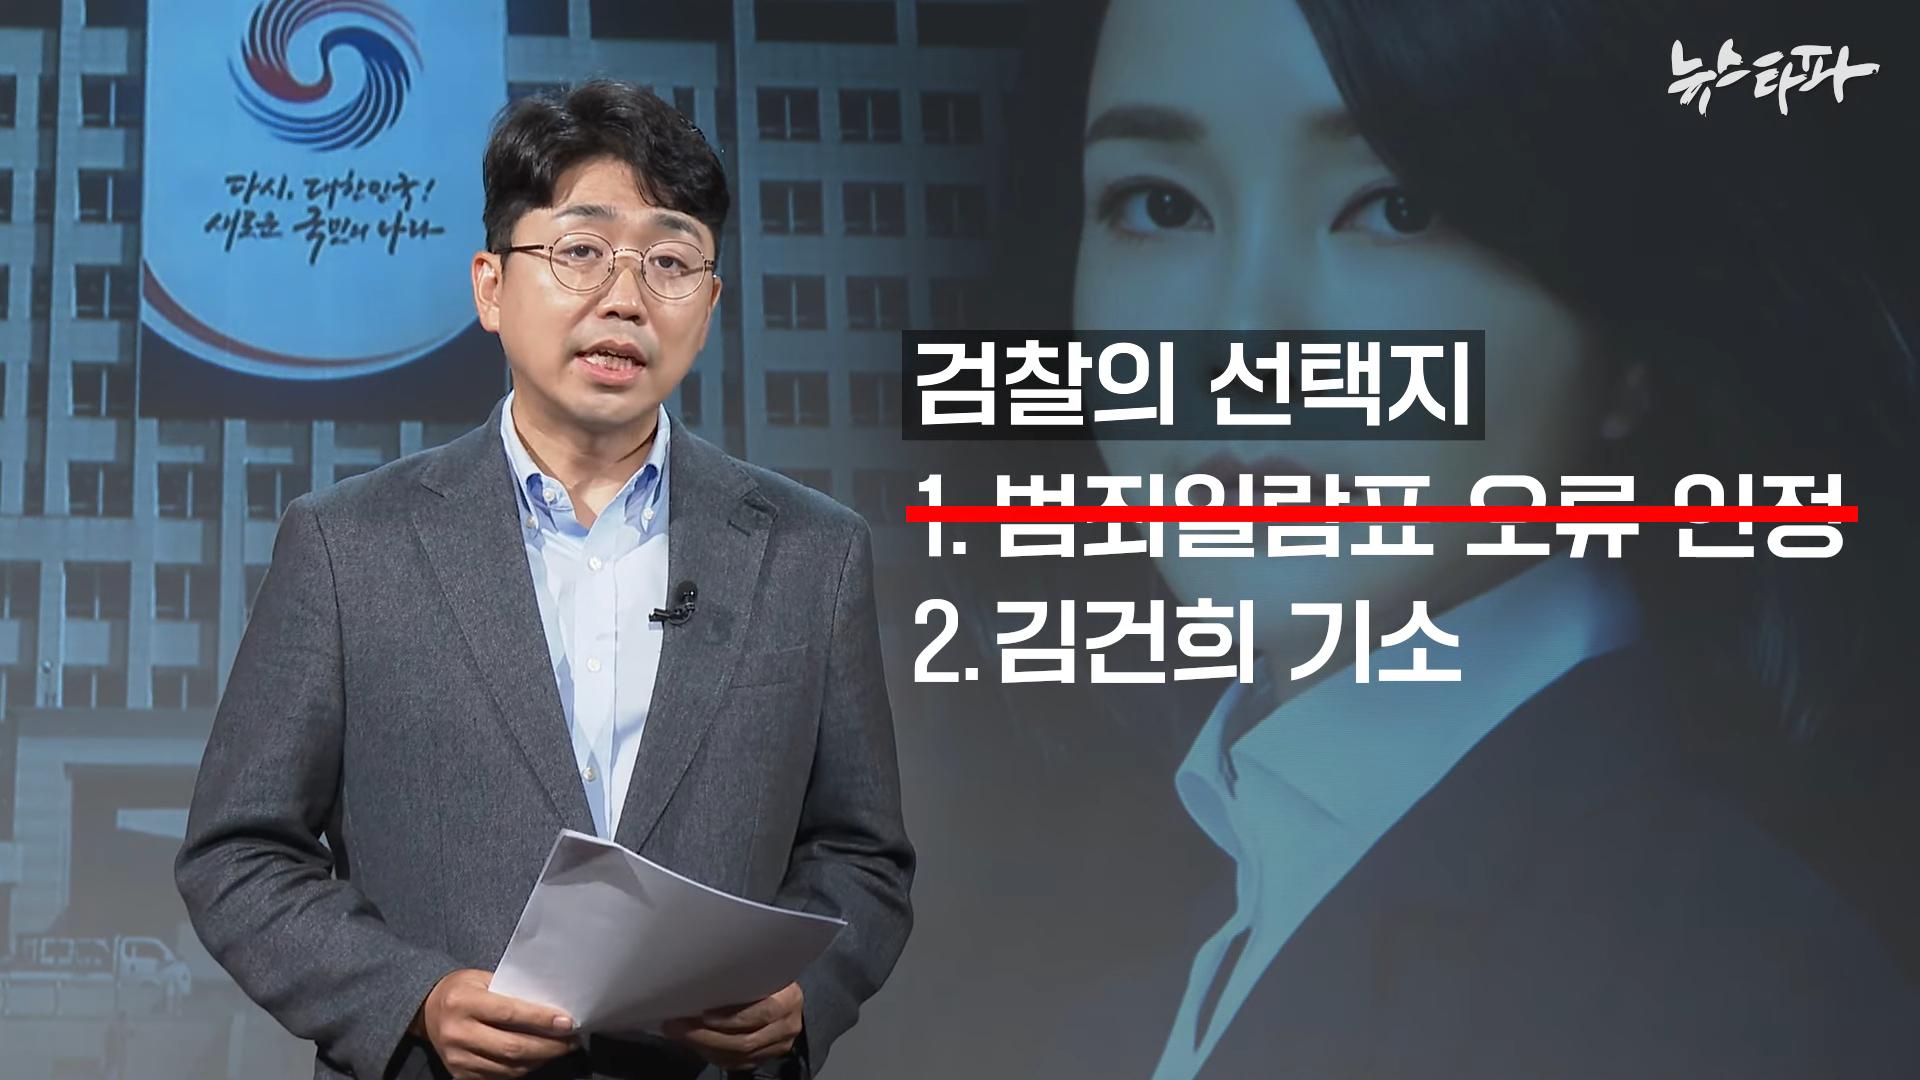 김건희 도이치모터스 녹취록 공개. 대통령 거짓말 드러났다 - 뉴스타파 7-3 screenshot.png.jpg